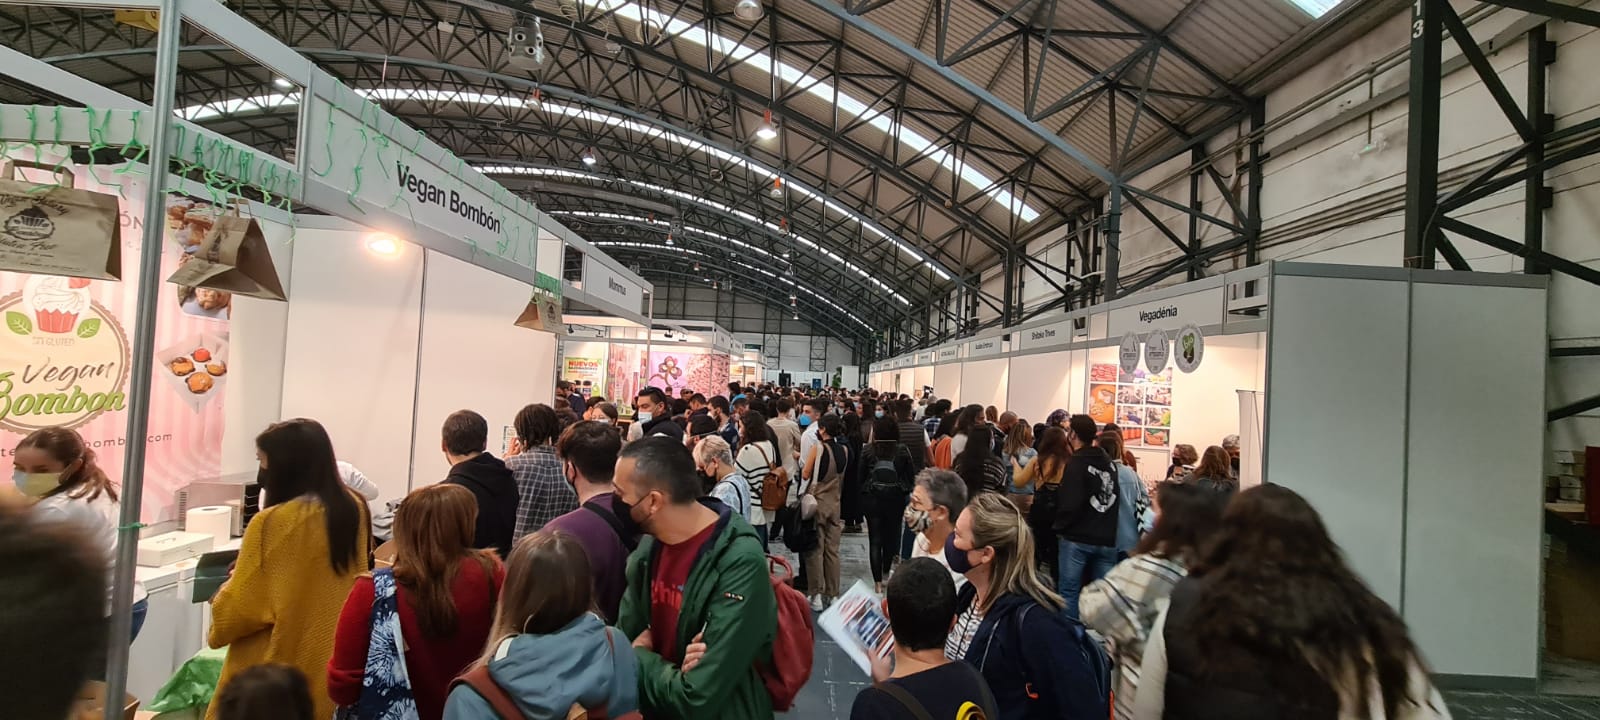 Éxito rotundo na inauguración en Vigo da primeira feira vegana de Galicia